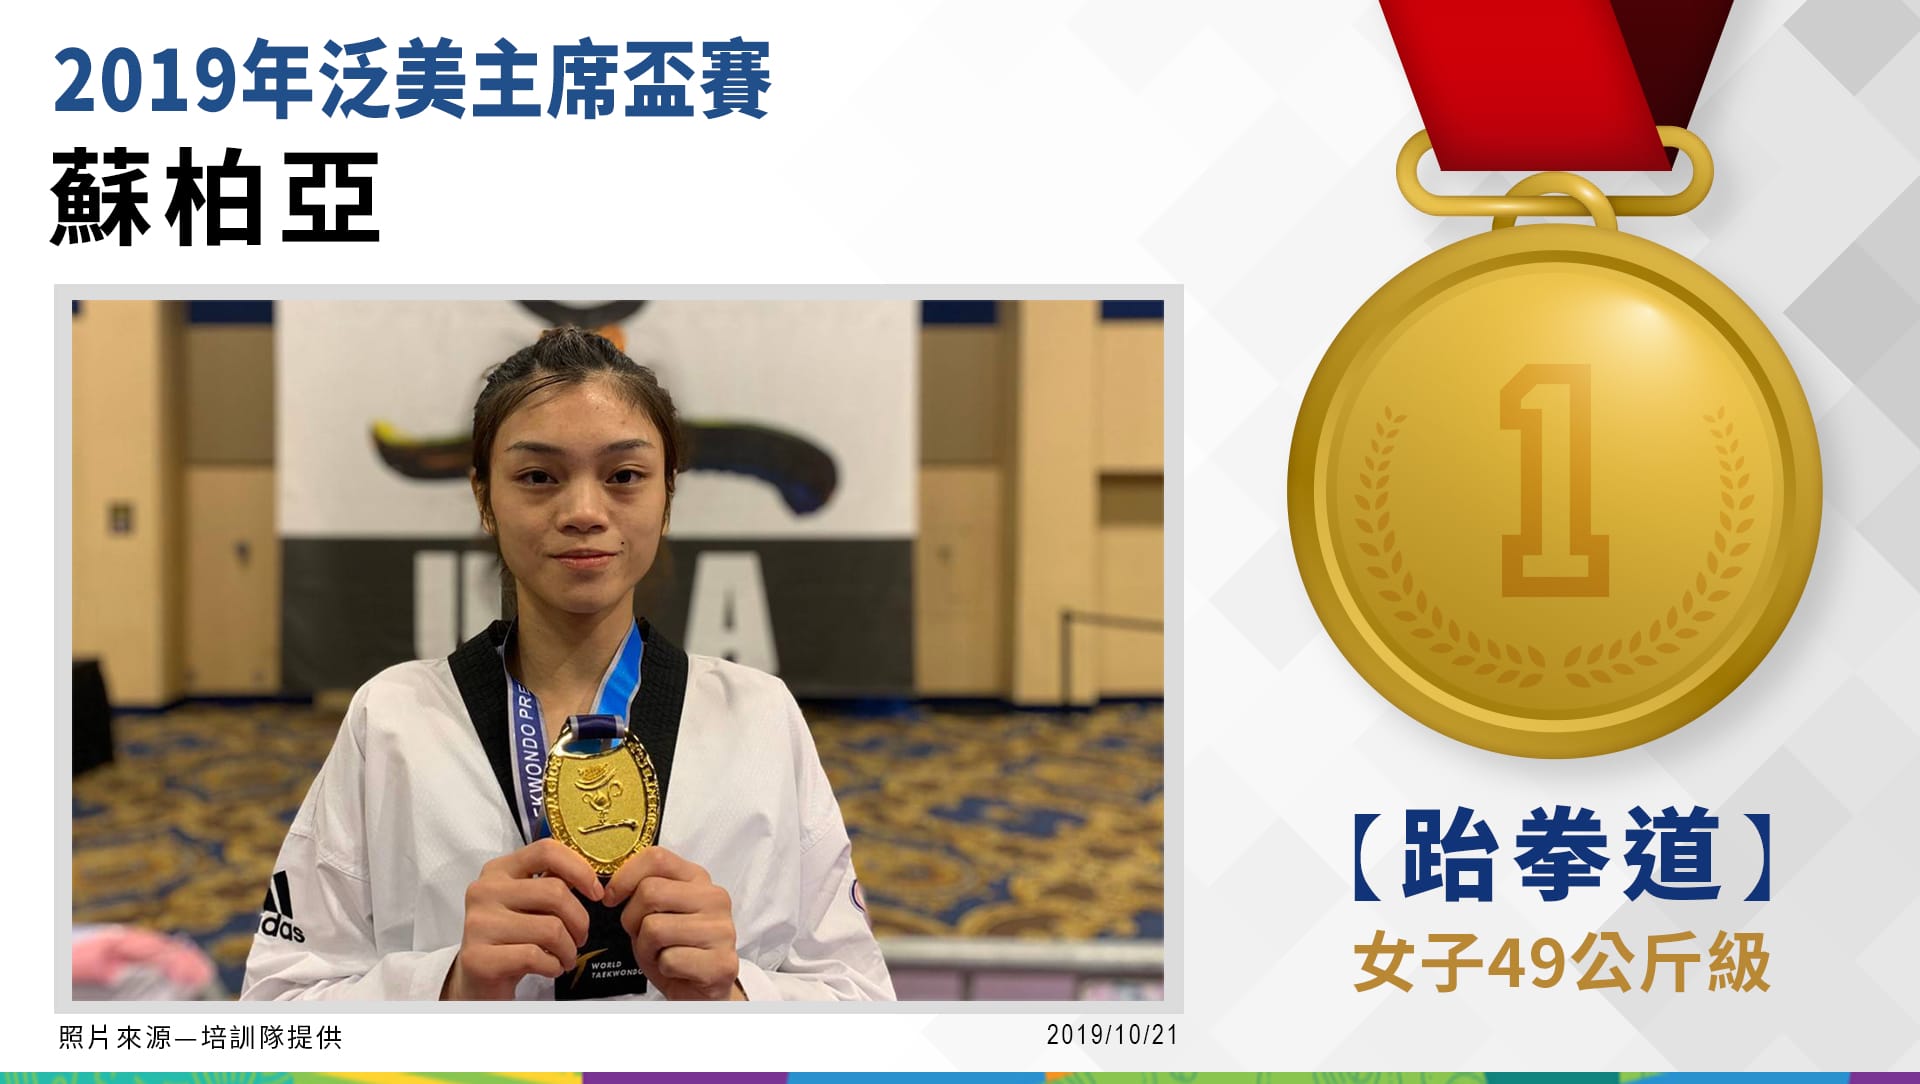  捷報-2019跆拳道泛美主席盃賽